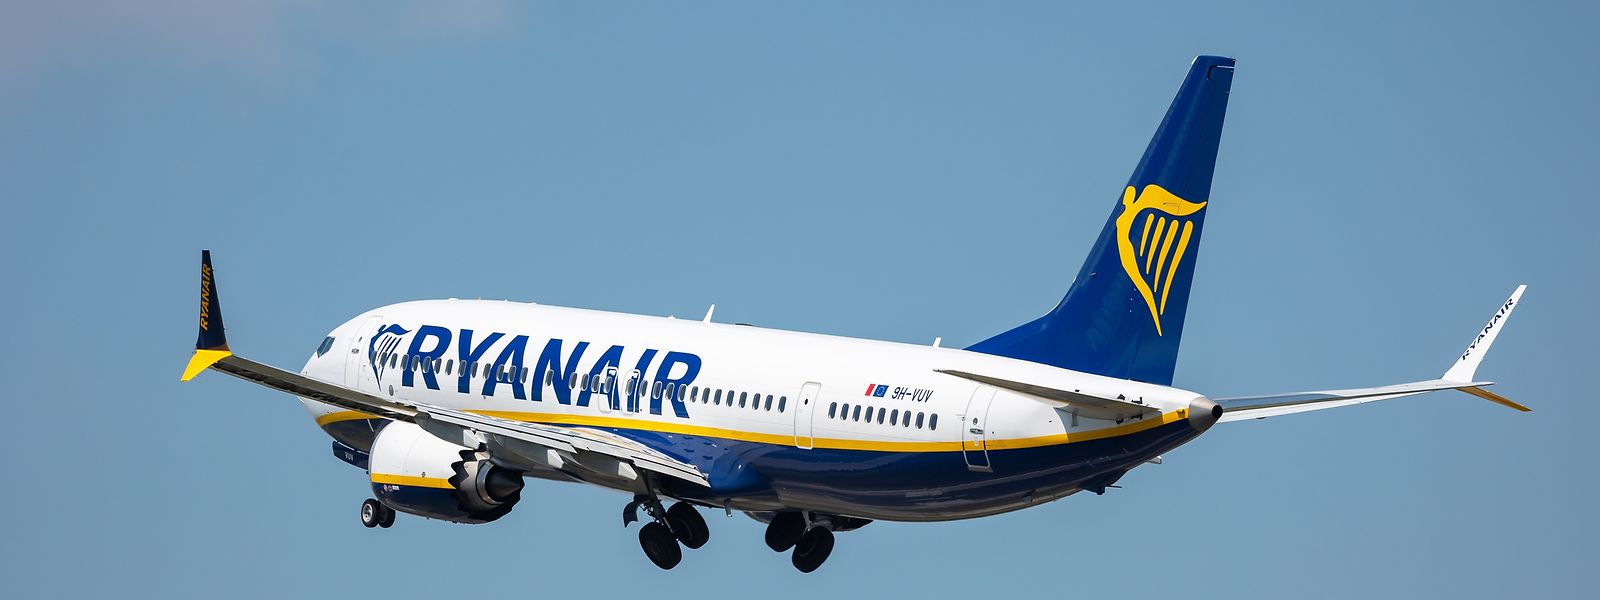 Die Billigfluggesellschaft Ryanair steuert auch vom Findel Ziele an.